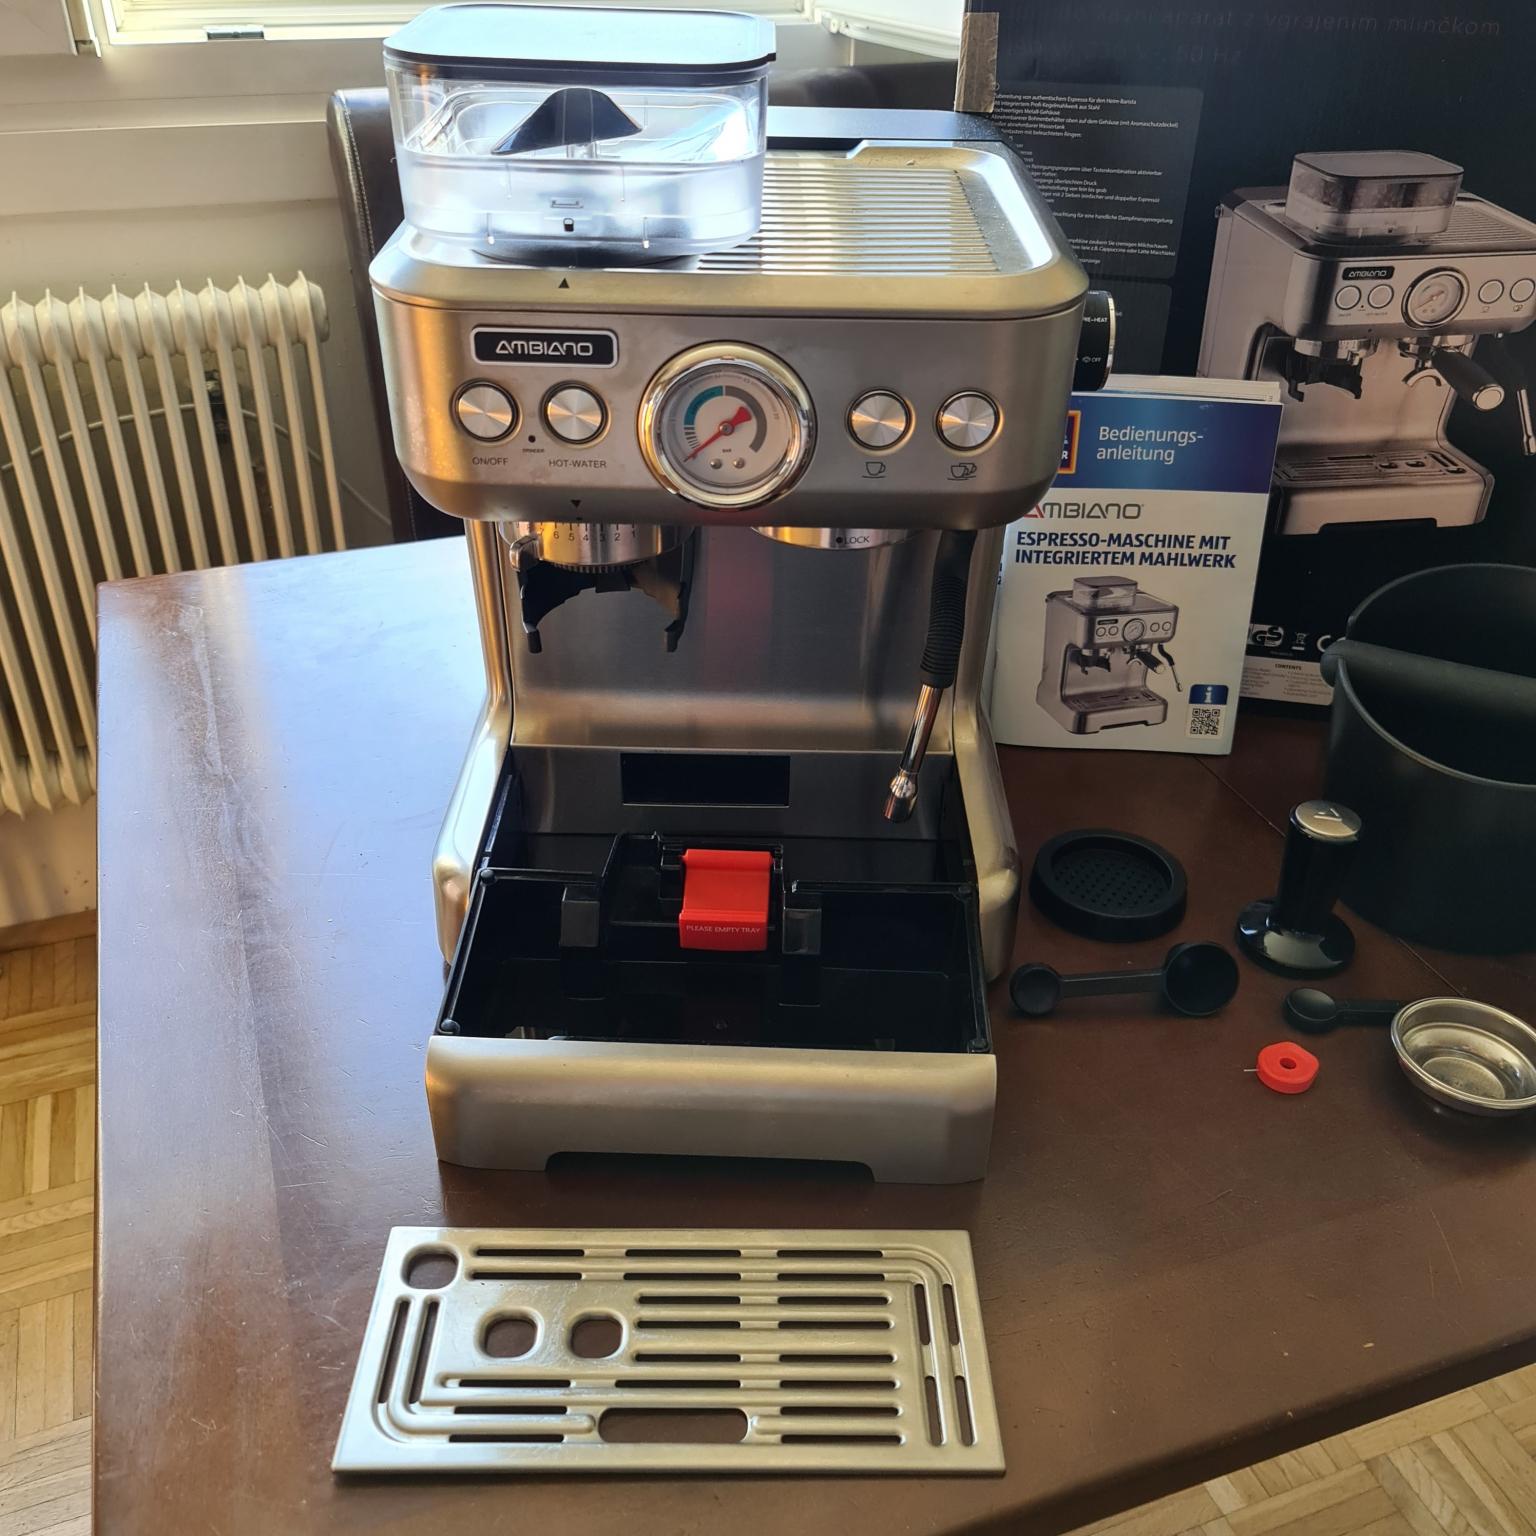 Ambiano espresso maschine mit integriertem mahlwerk